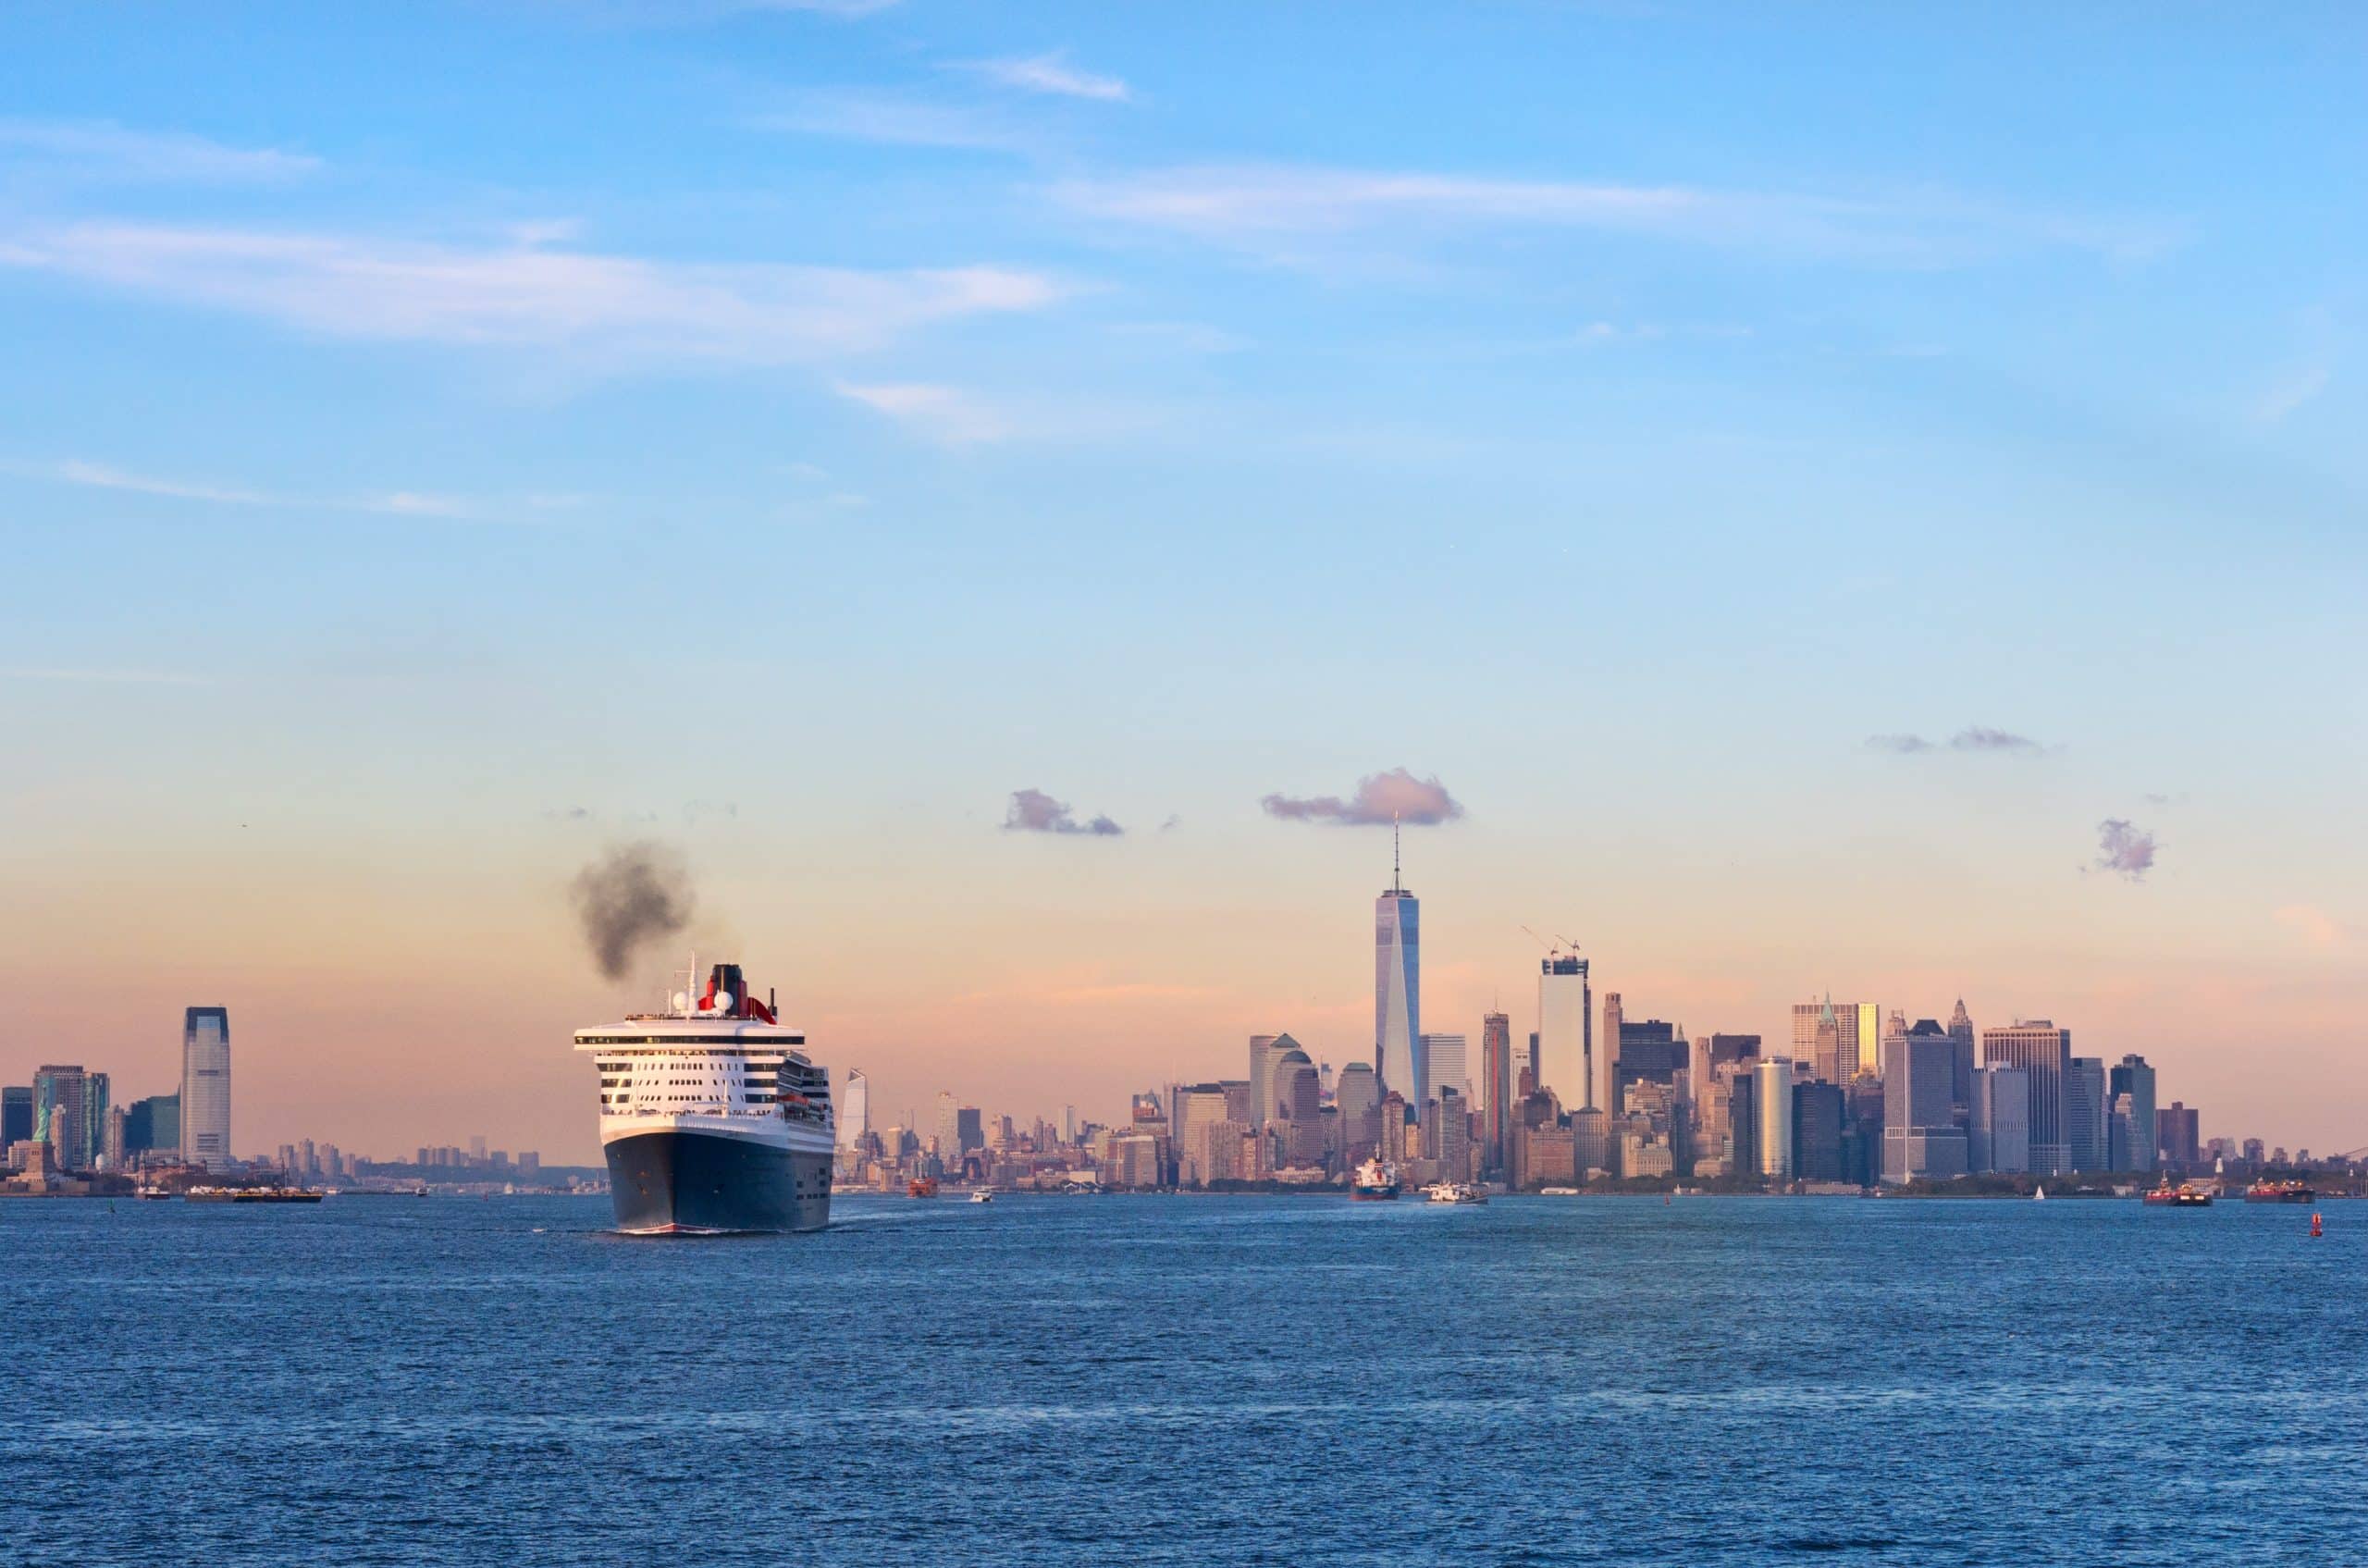 New York City: Transatlantic ocean liner Queen Mary 2 in New York Harbor.